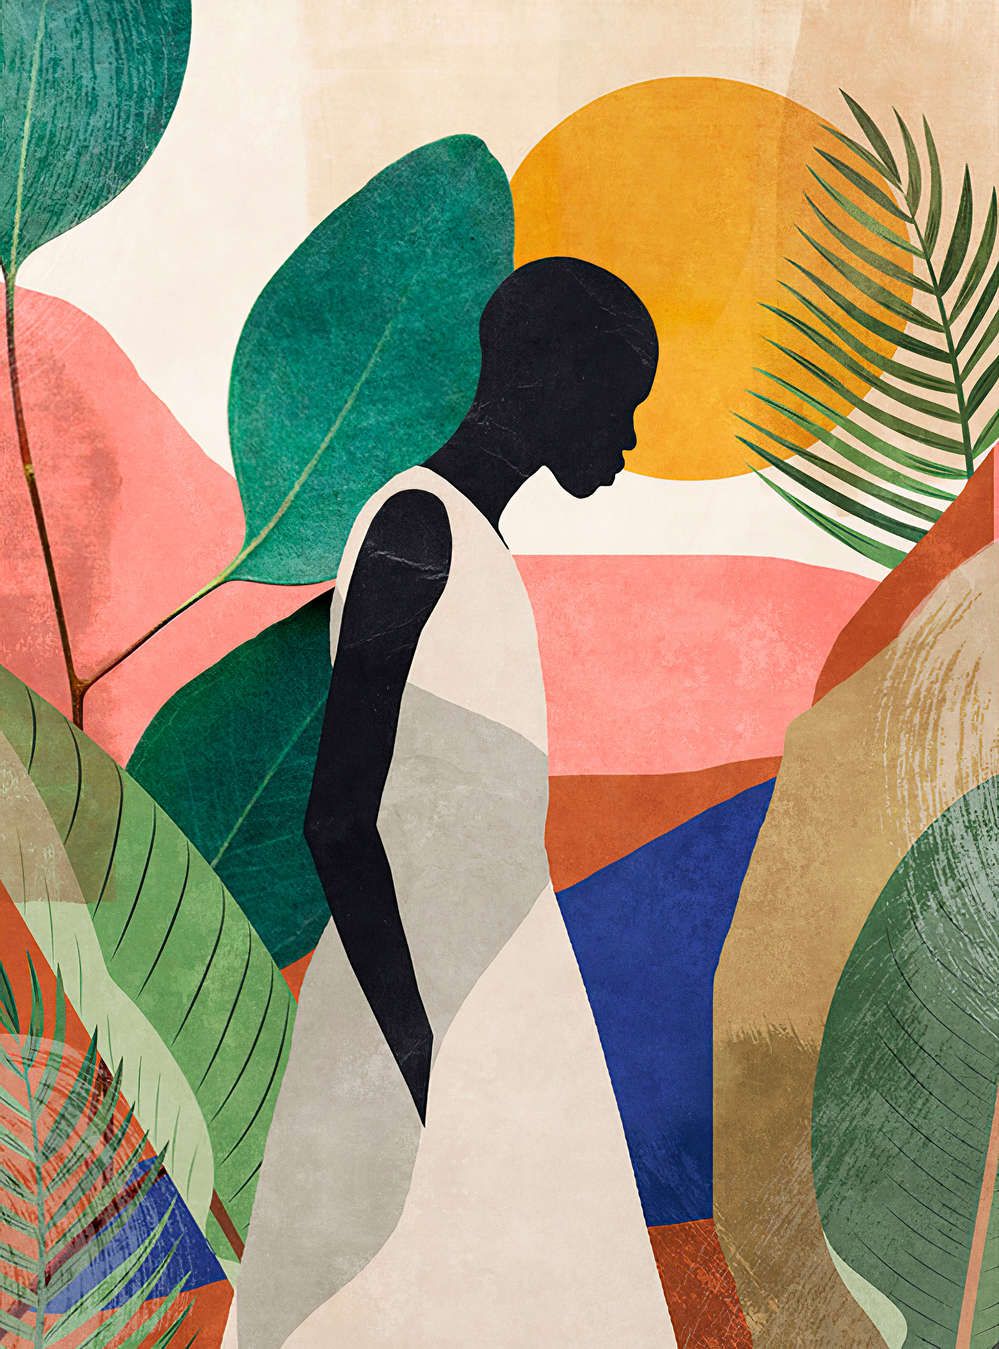             Digital behang »nala« - Silhouet, bladeren & grassen - Bont motief op vintage pleistertextuur | Glad, licht parelmoerachtig vlies
        